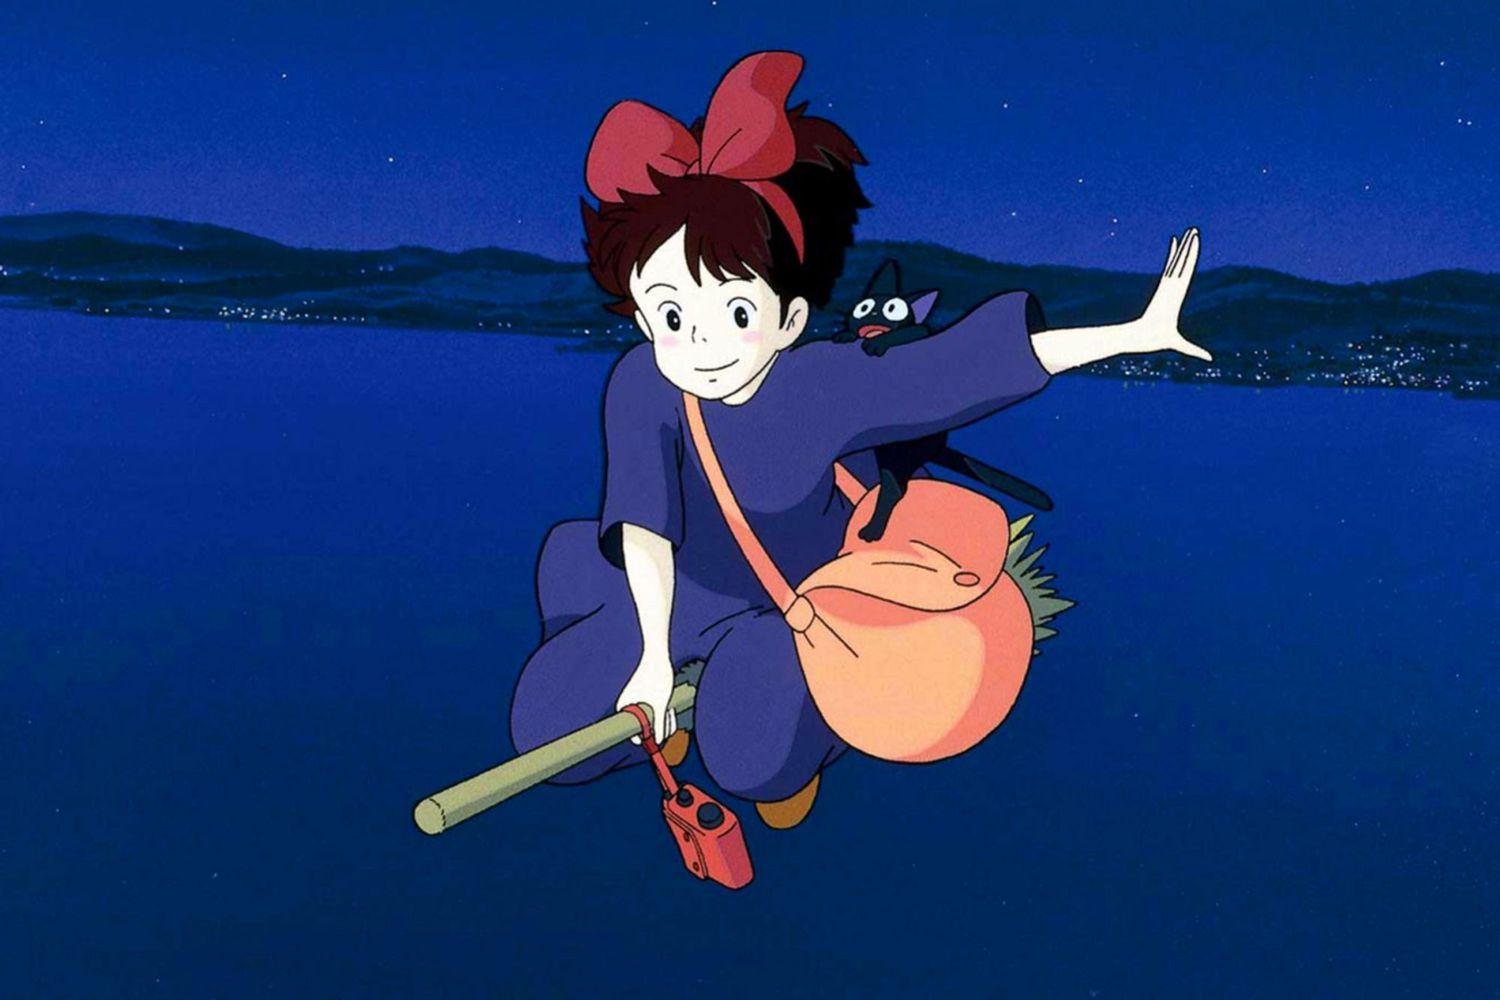 7. Kiki's Delivery Service (1989)